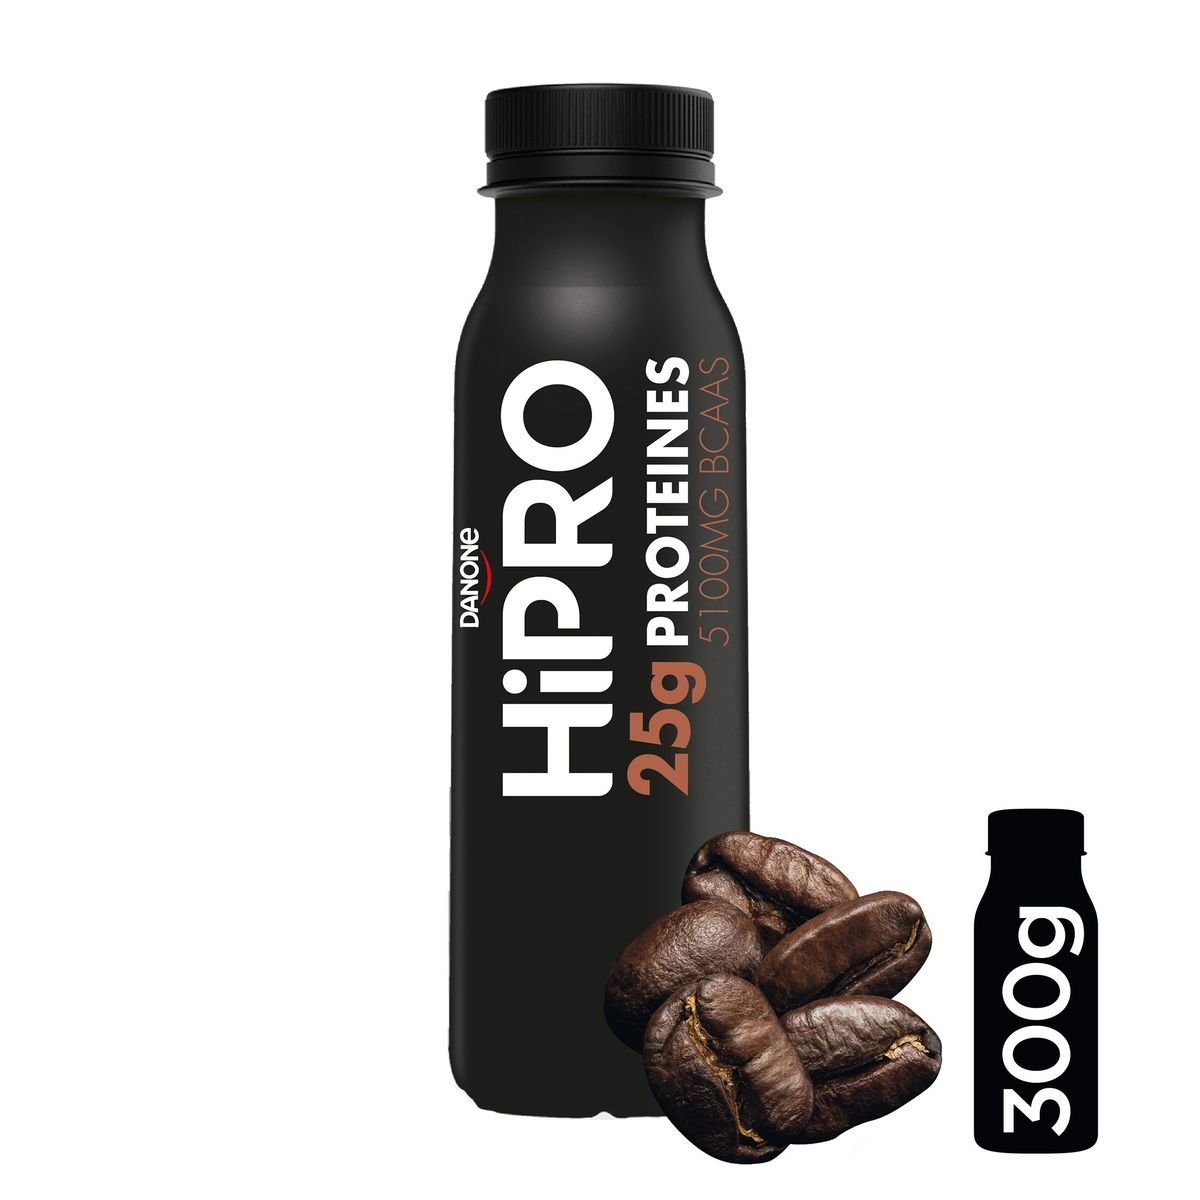 HiPRO A Boire Saveur Café Protéines 25g 0% m.g. bouteille 300 ml